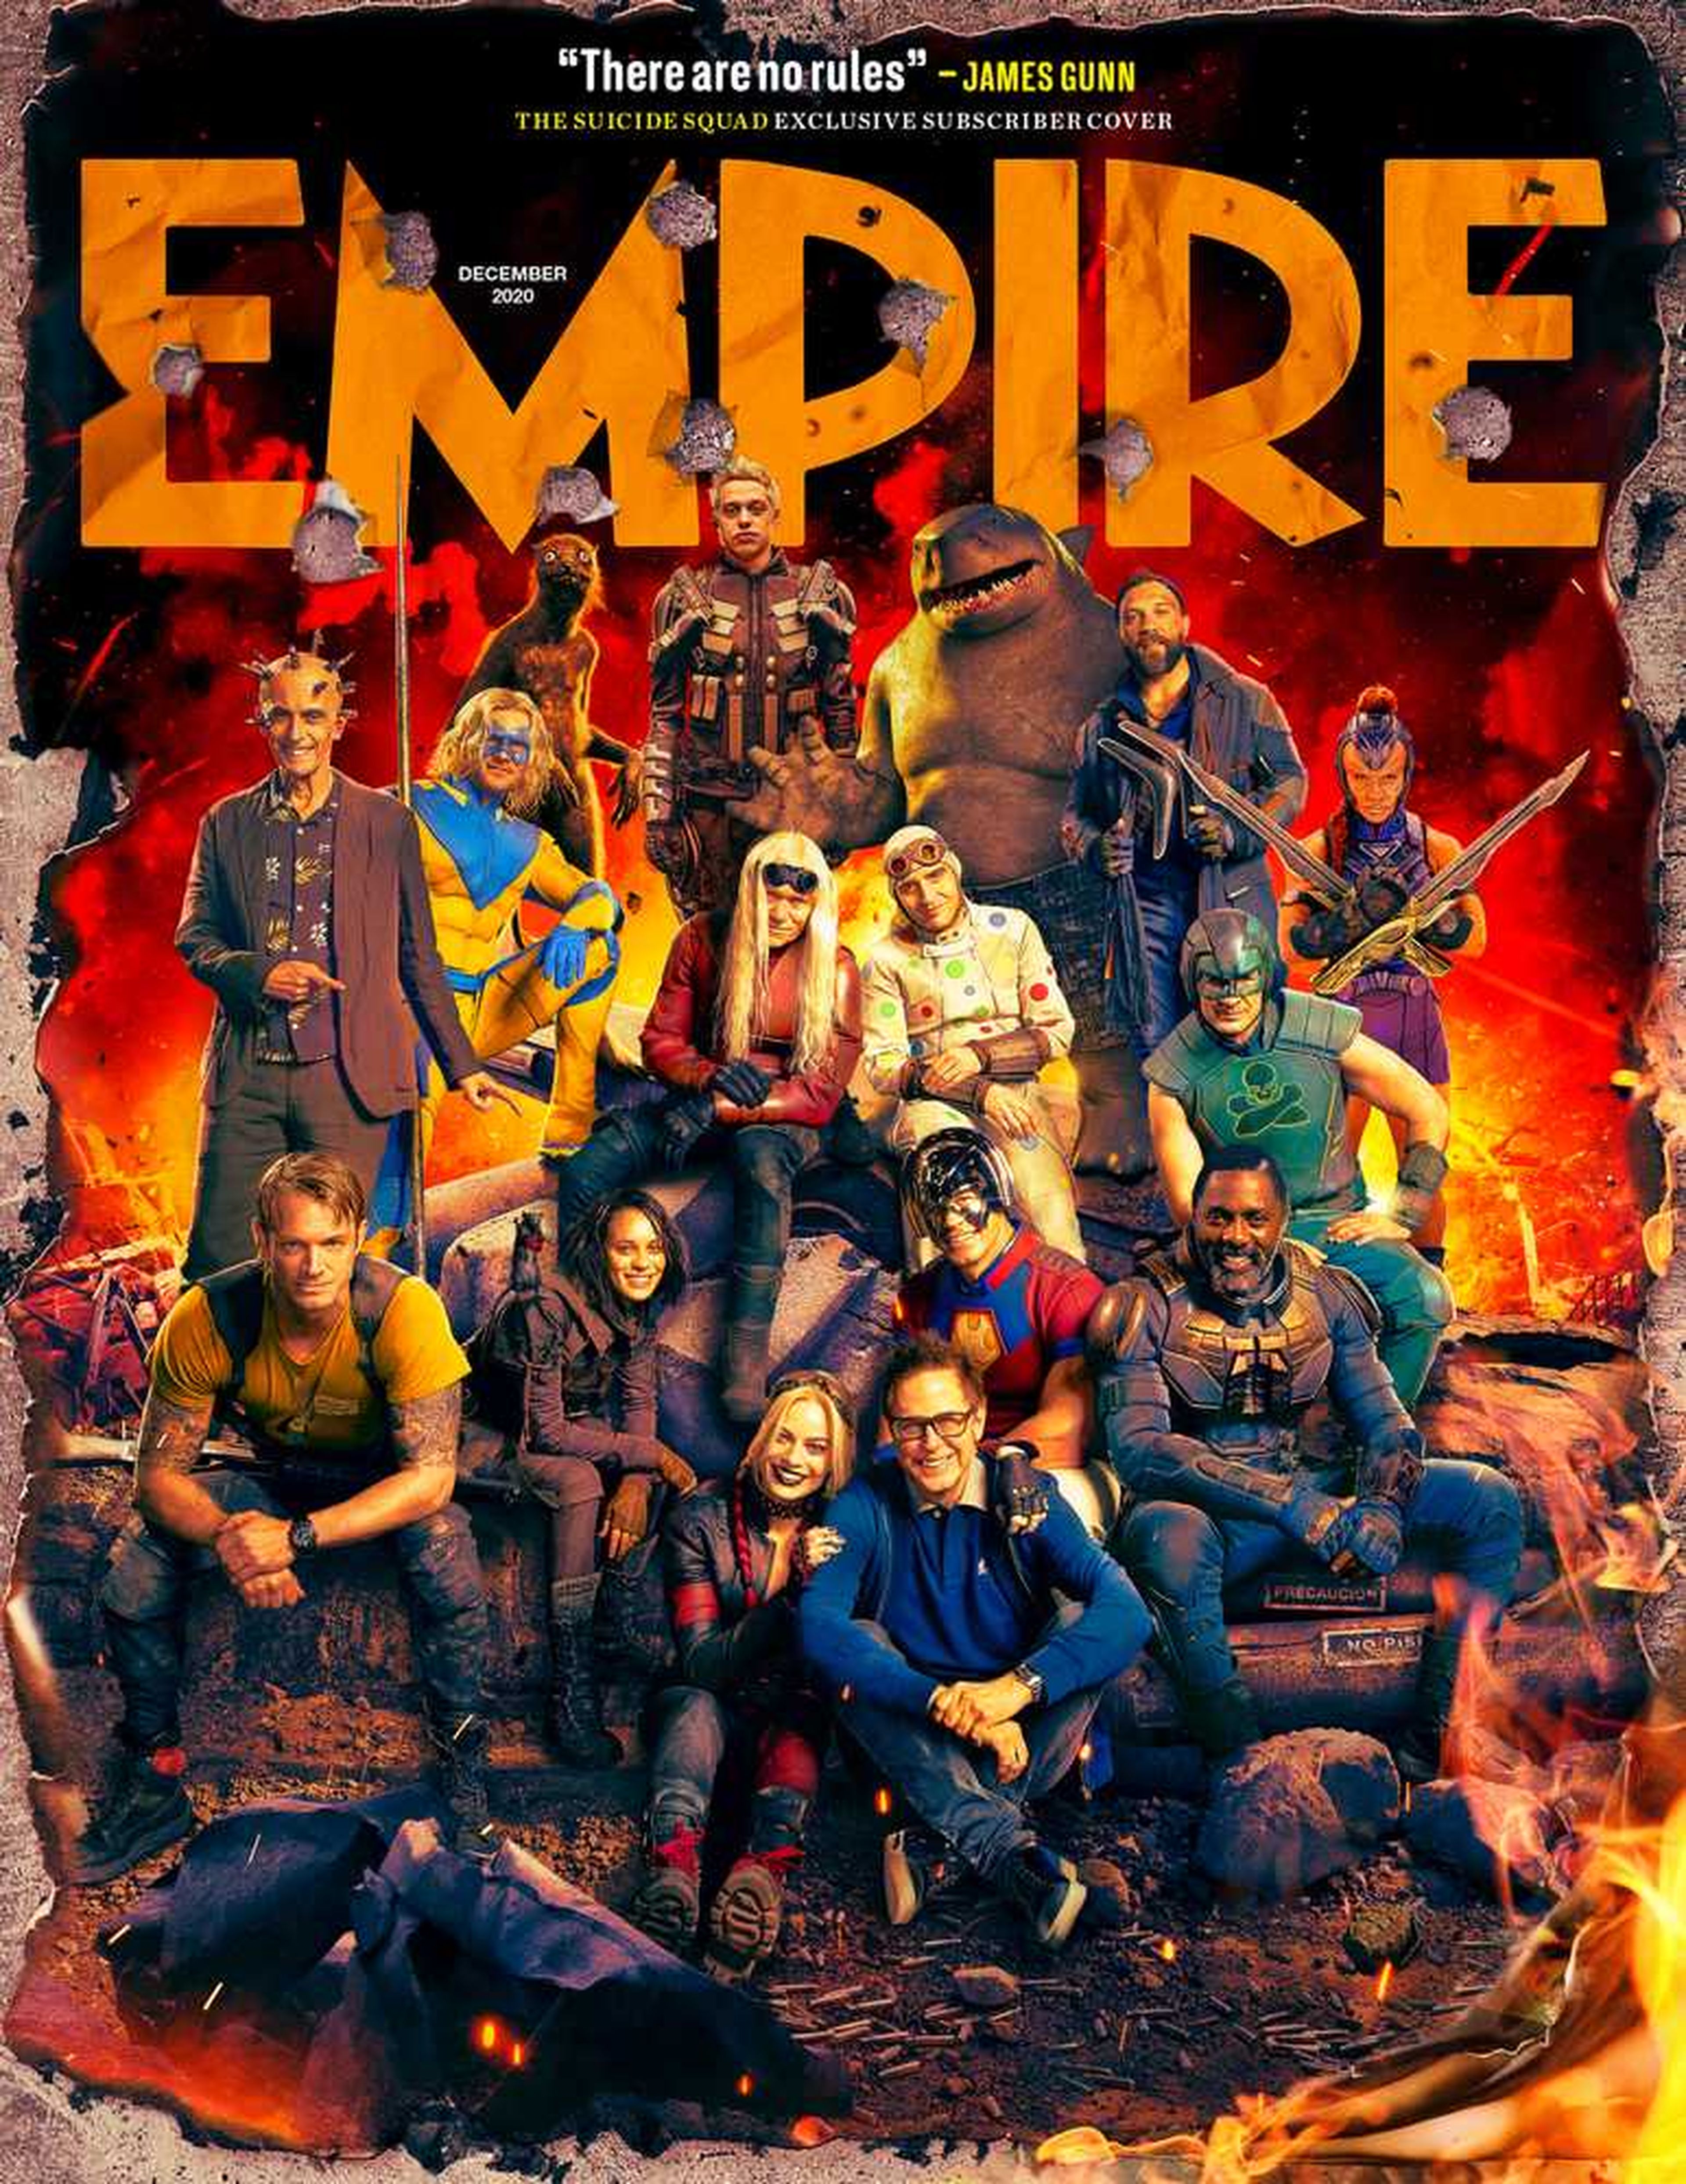 Portada de la revista Empire con el Escuadrón Suicida de James Gunn